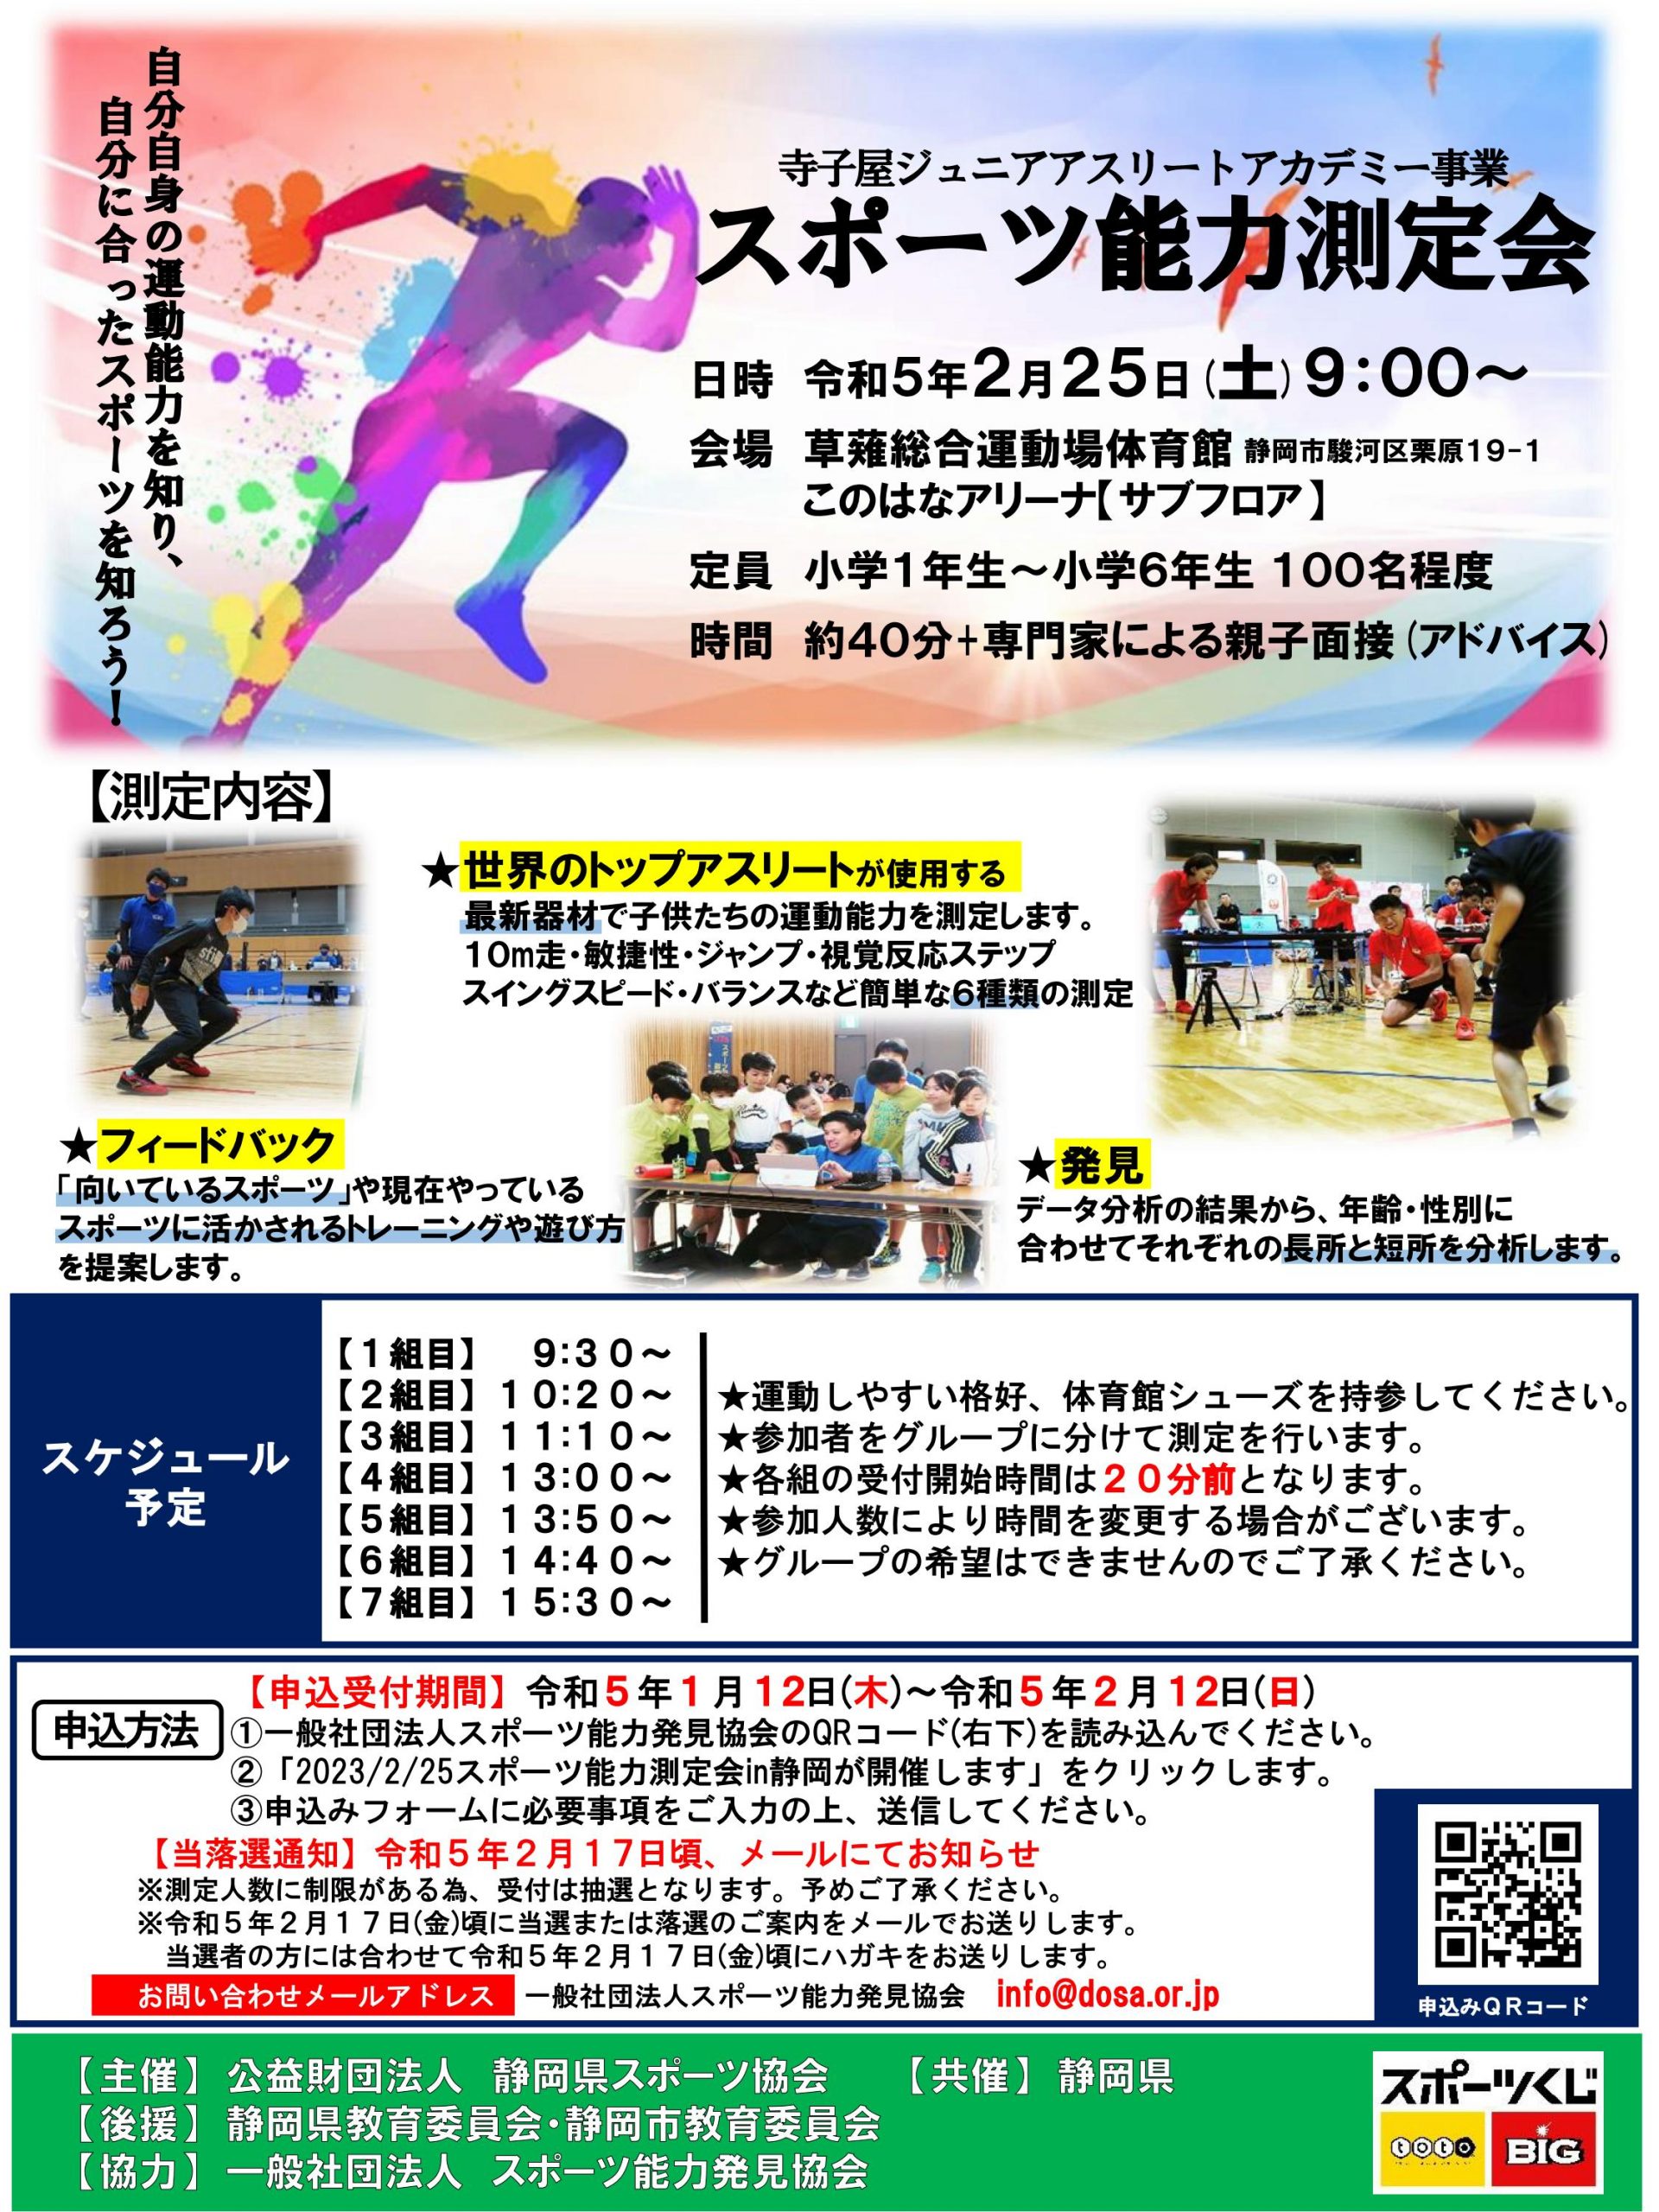 2023/2/25スポーツ能力測定会 in 静岡を開催します。